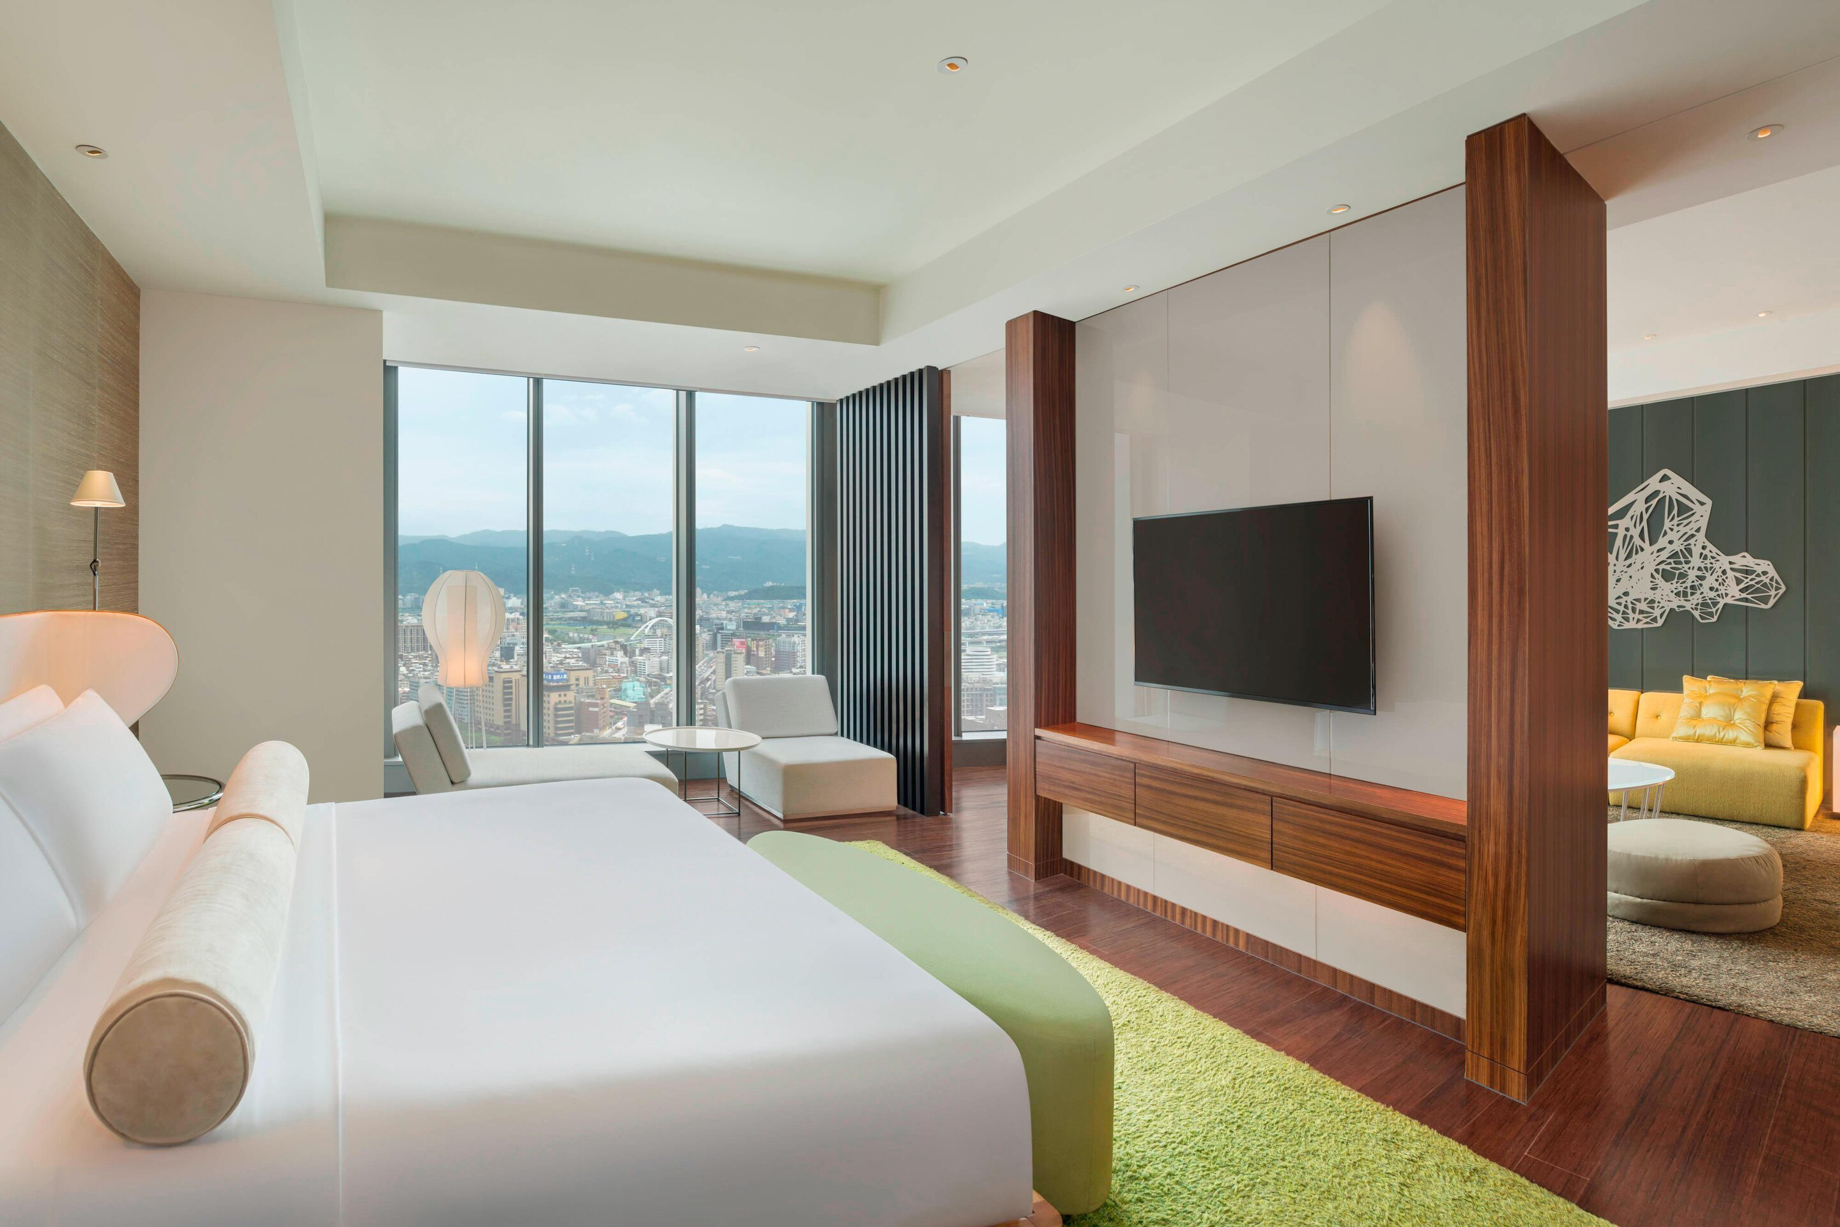 W Taipei Hotel – Taipei, Taiwan – Marvelous Suite King room